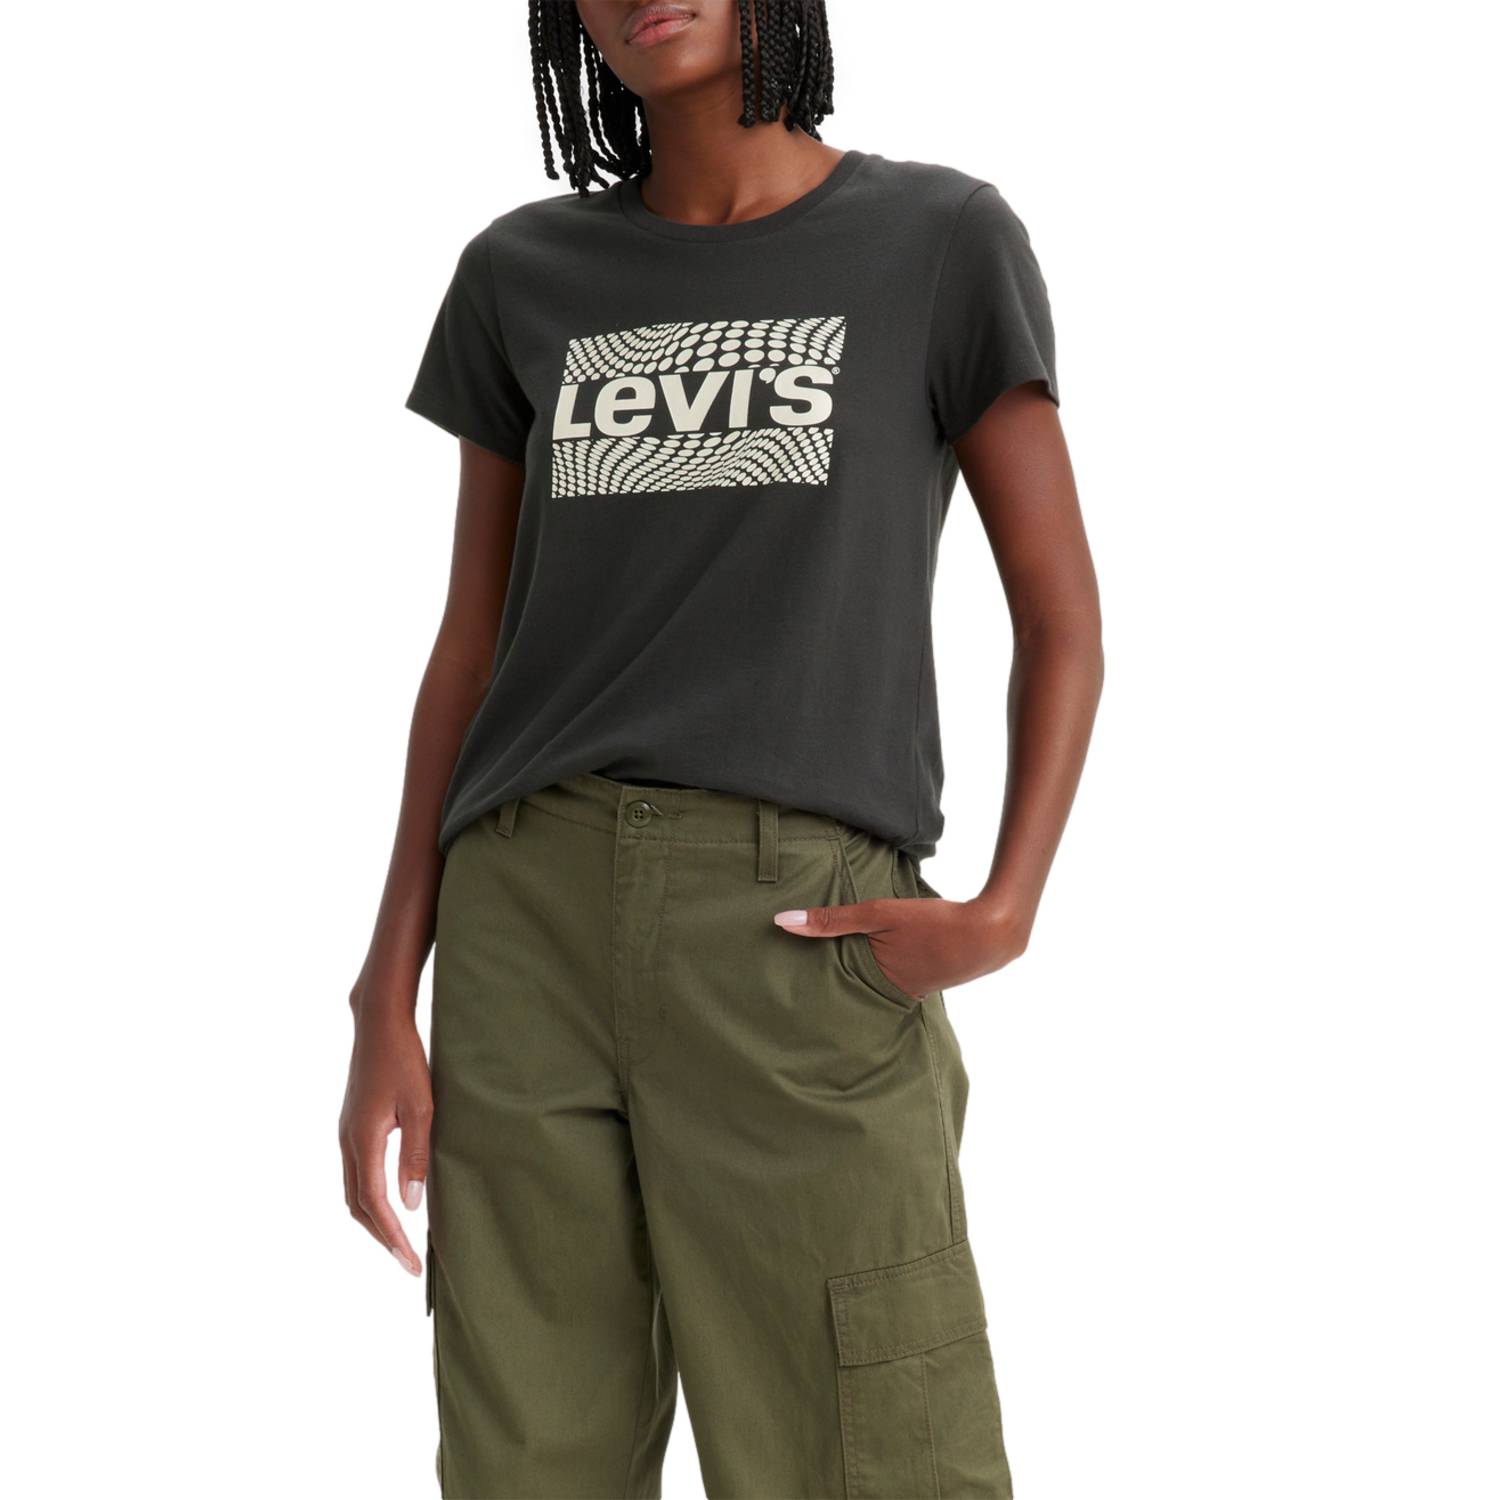 LEVIS Polera Perfect con logo Sportswear Negro Levis | falabella.com